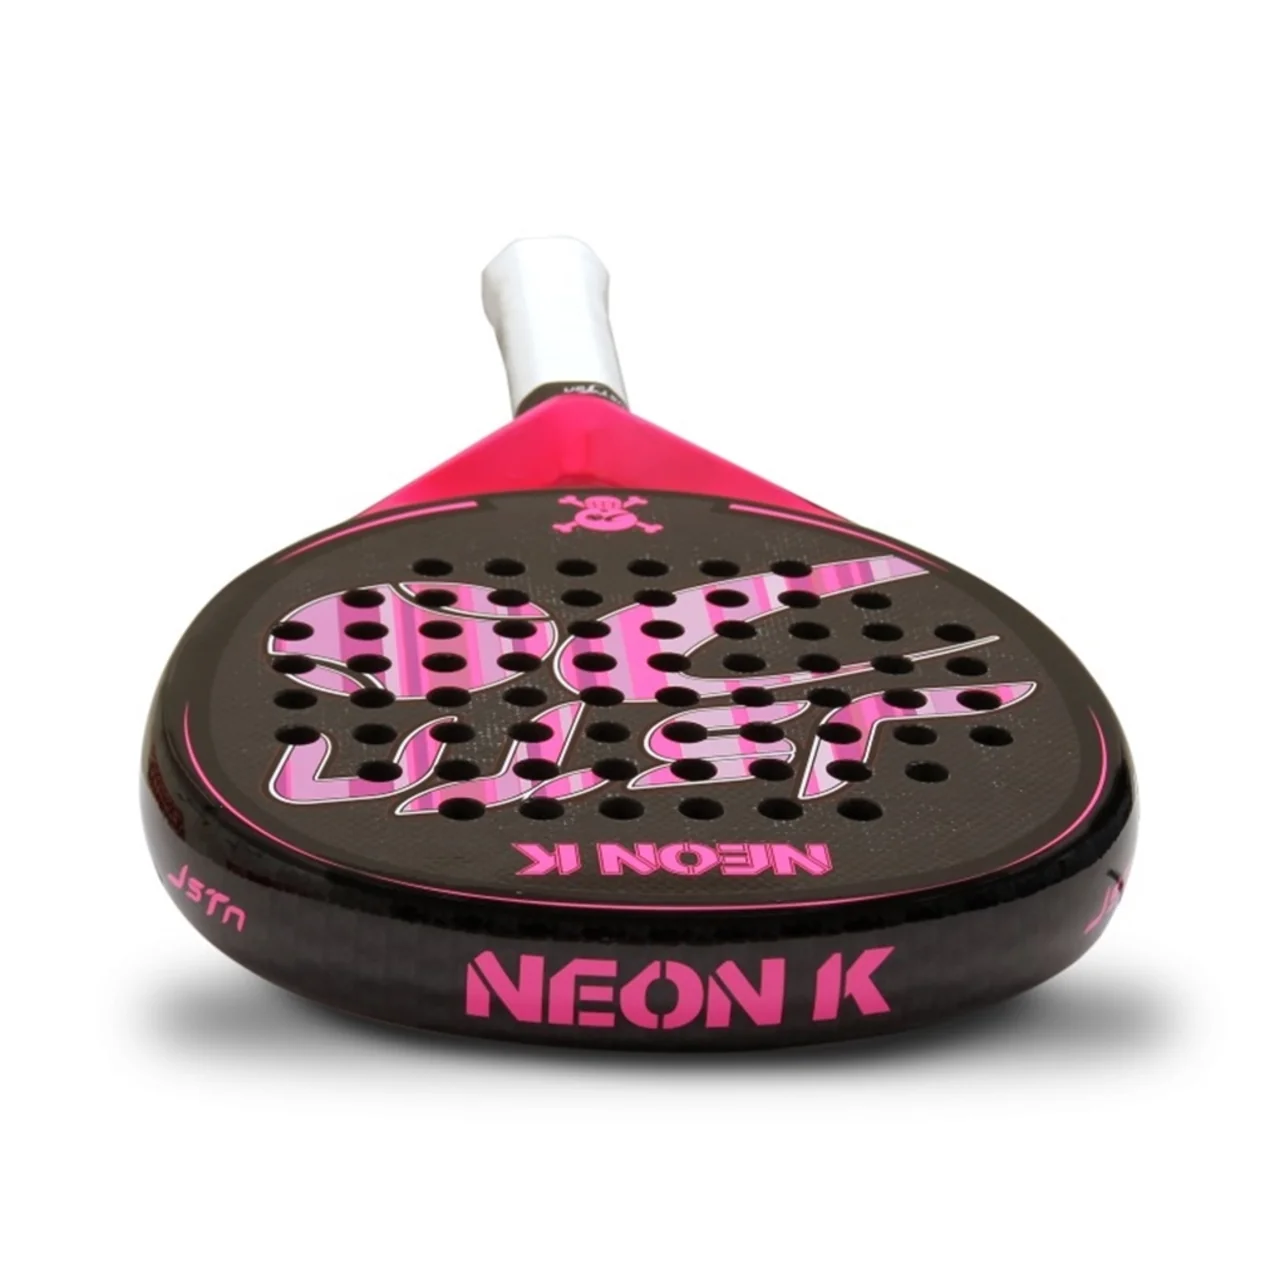 Just Ten Neon K Pink